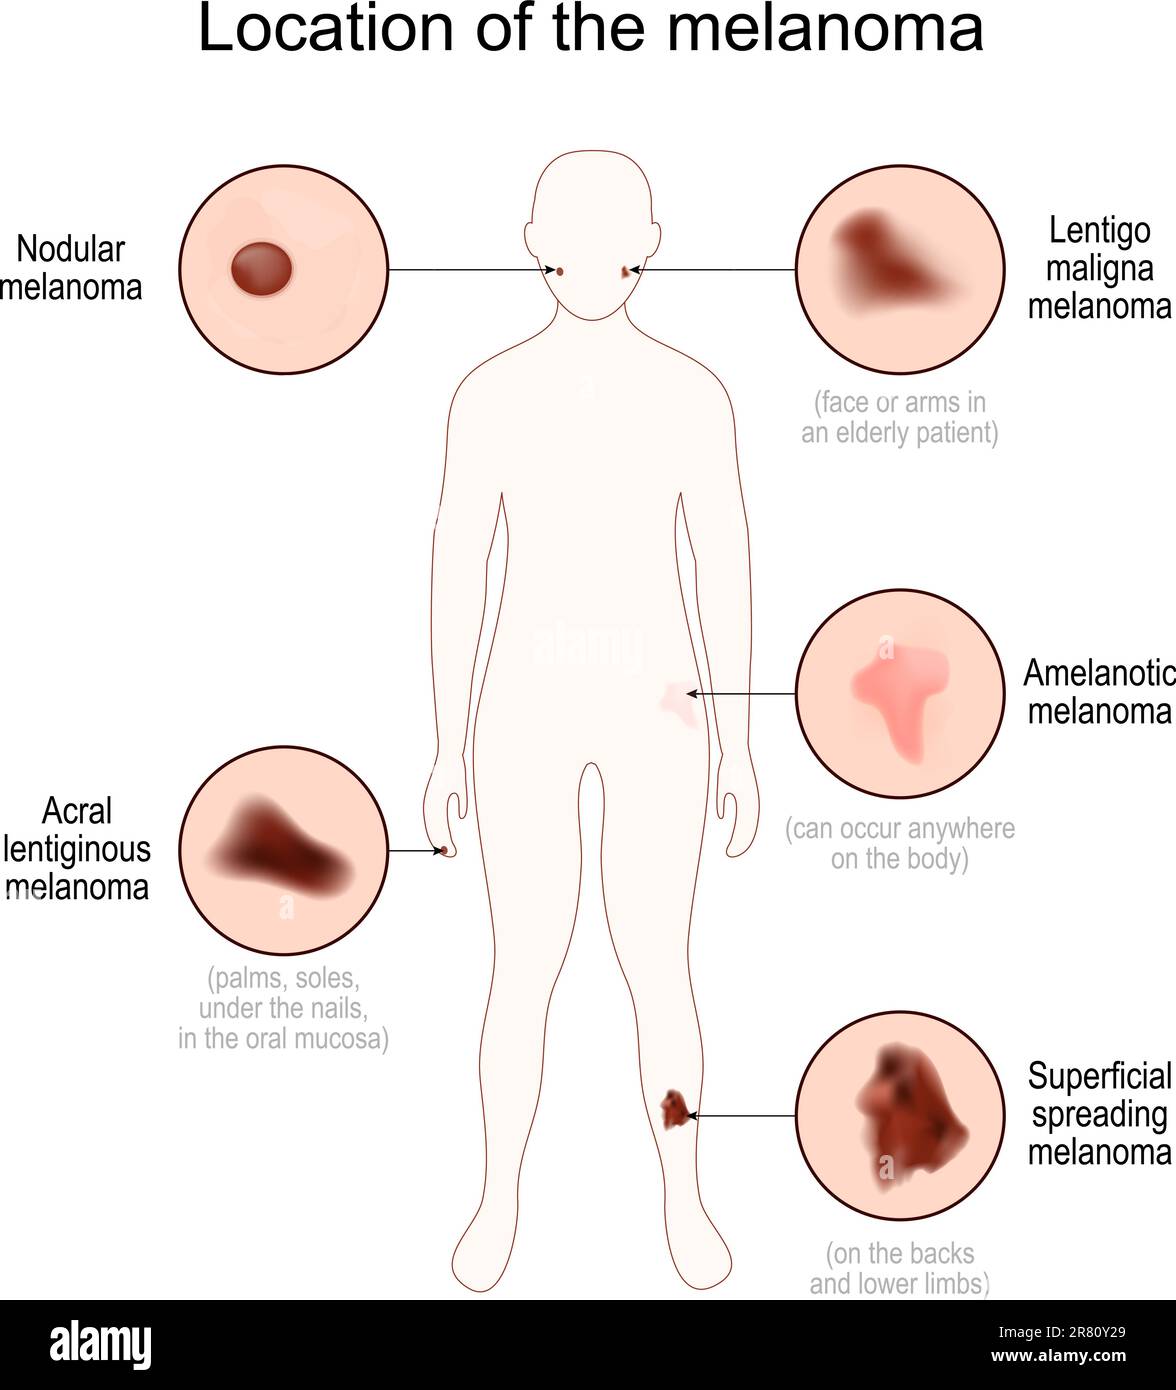 Posizione del melanoma. Silhouette del corpo umano con nodulare, lentiginosa acrale, lentigo maligna, diffusione superficiale e melanoma amelanotico. Chiudi Illustrazione Vettoriale